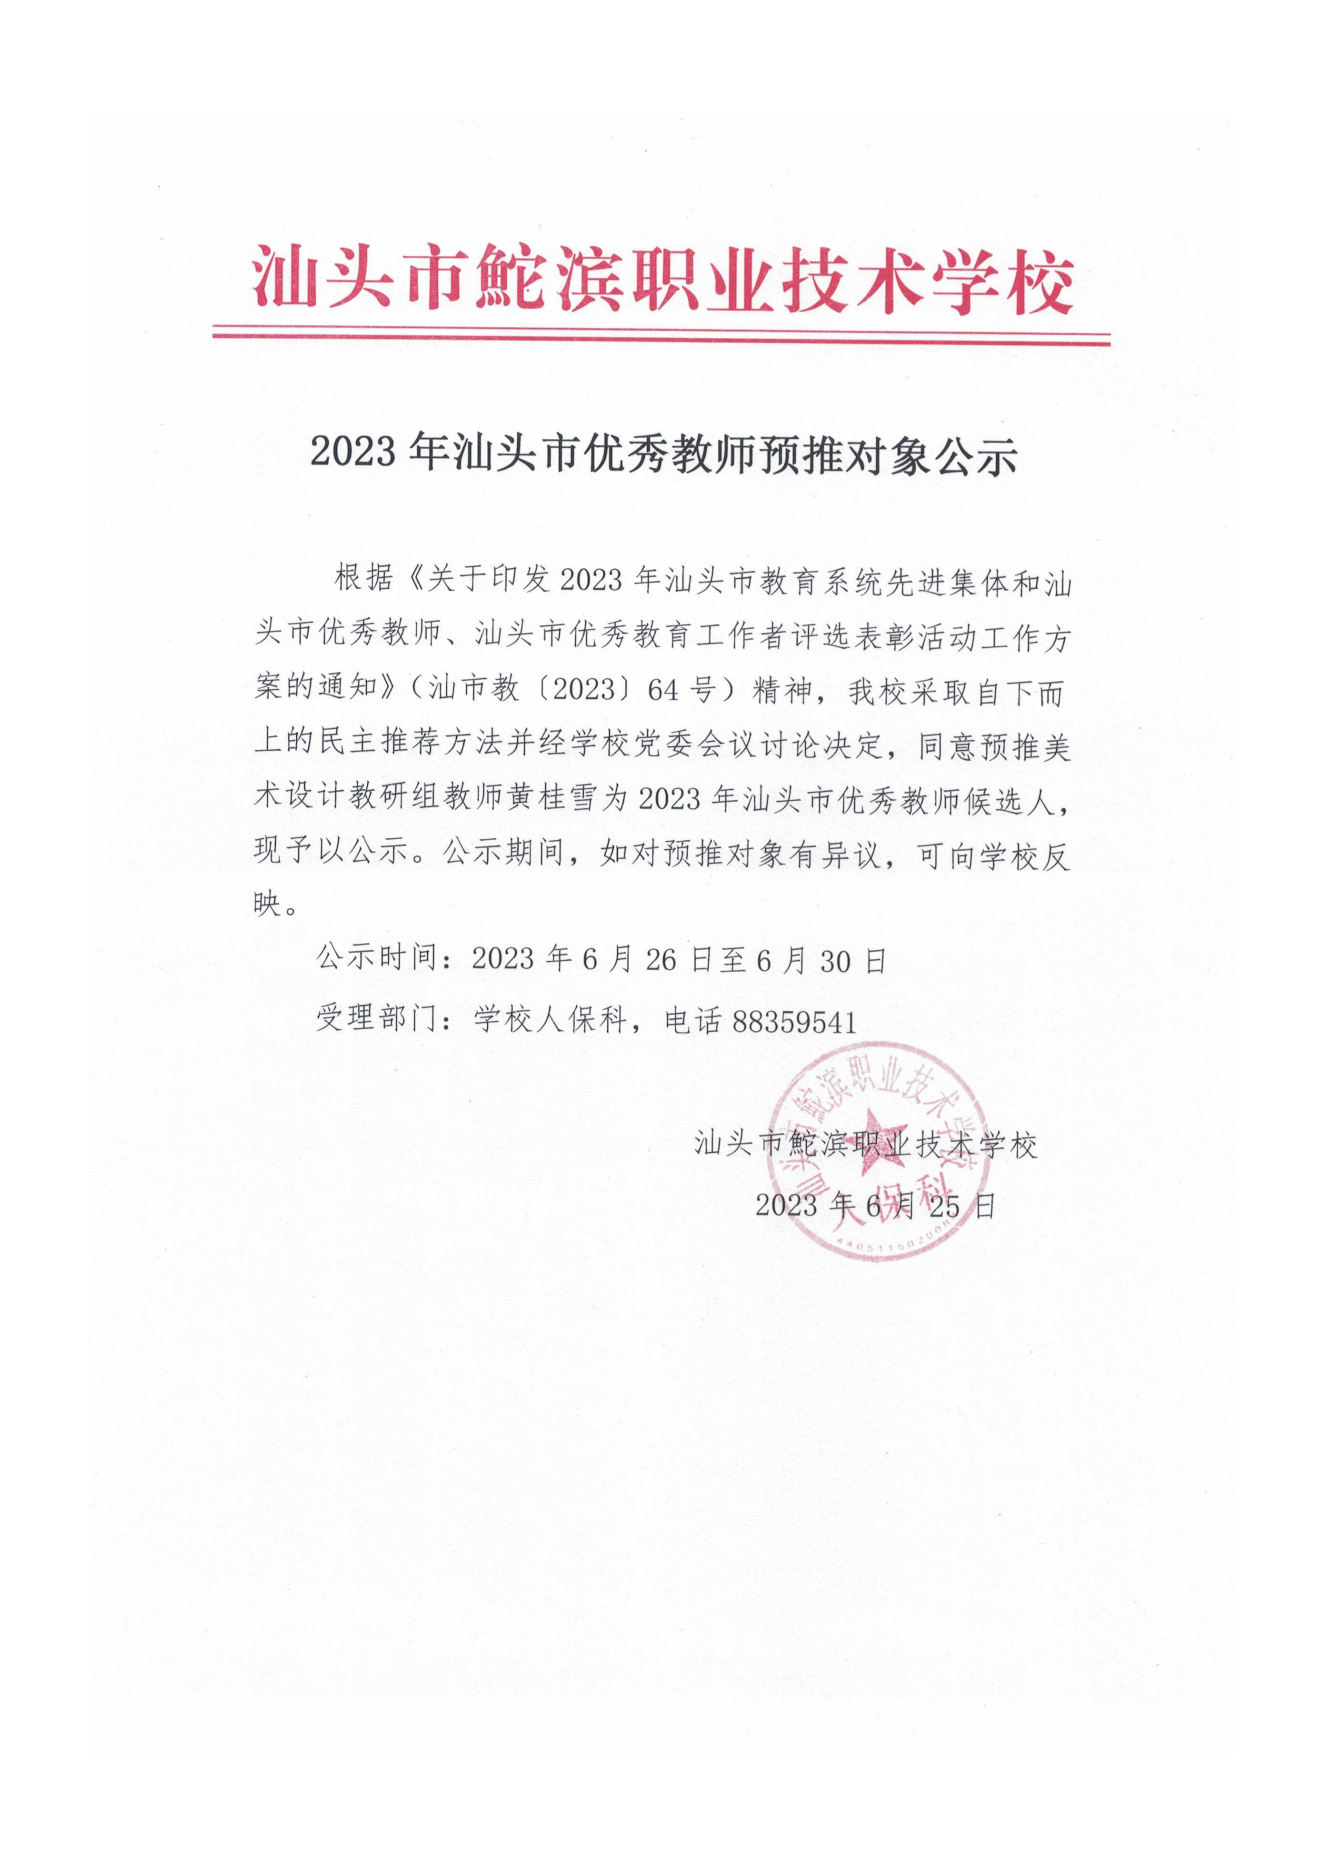 20230626-2023年汕头市优秀教师预推对象公示——黄桂雪（盖章）_00.png